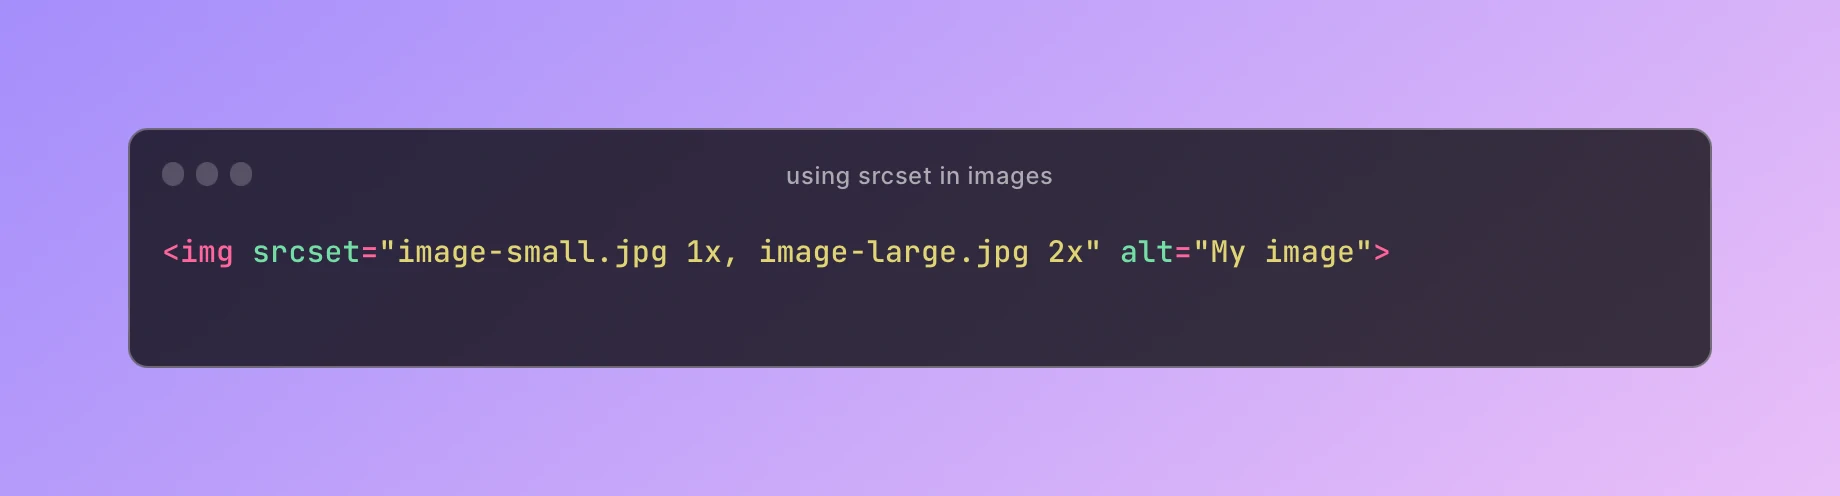 Optimizing images with srcset